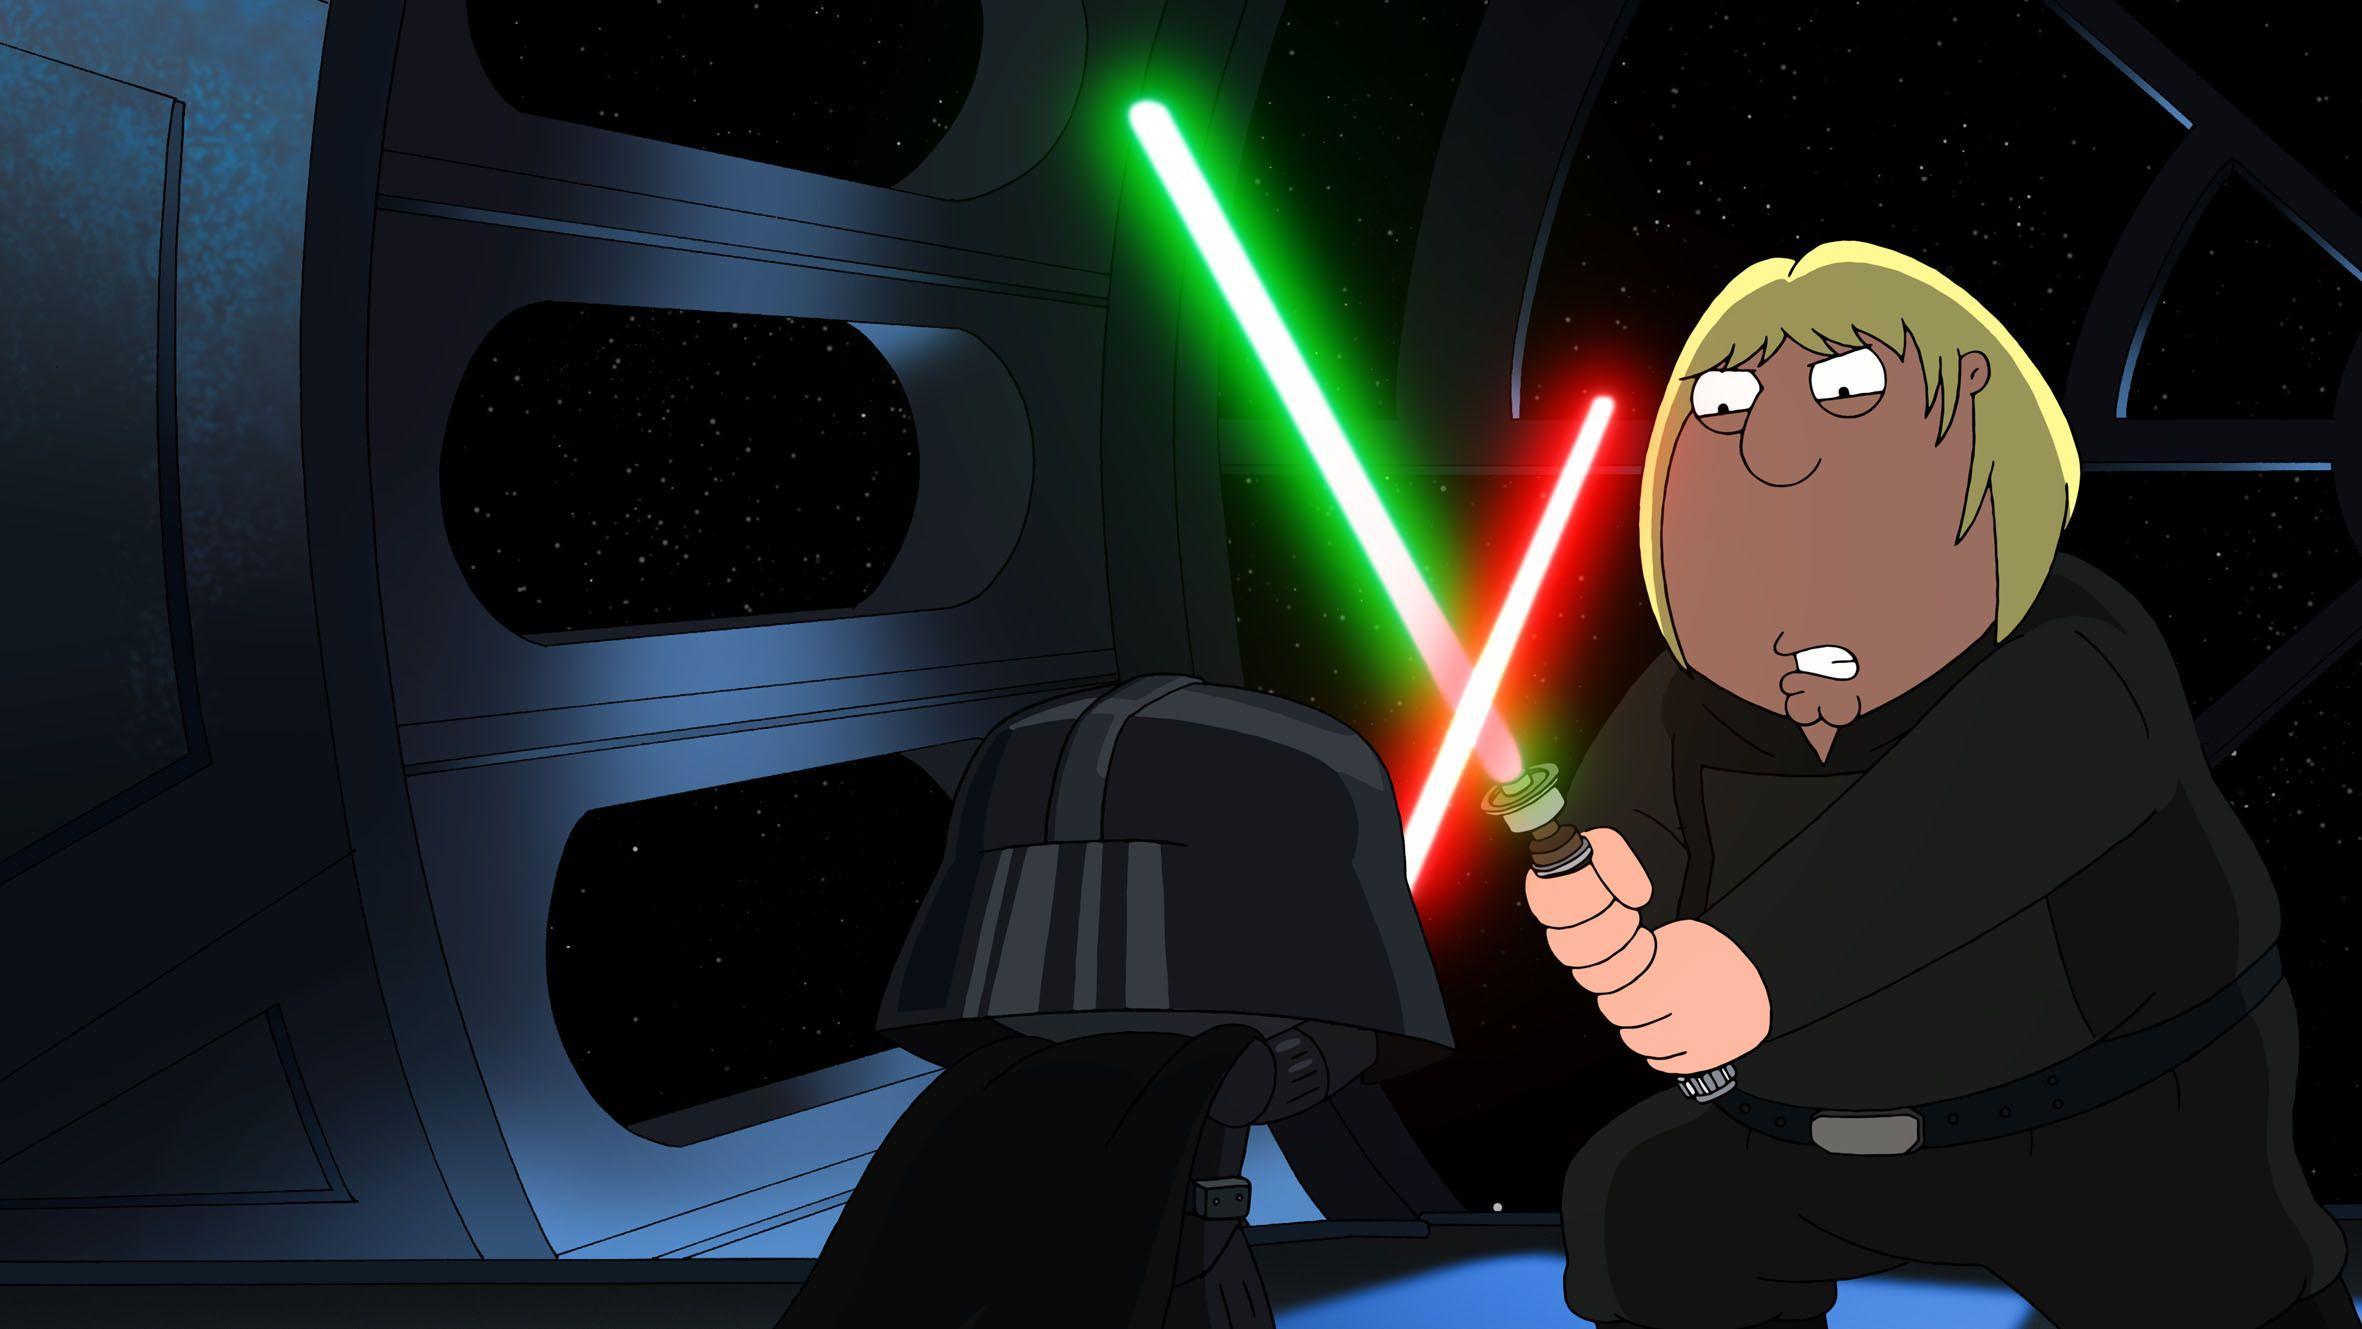 Family Guy Star Wars Stewie